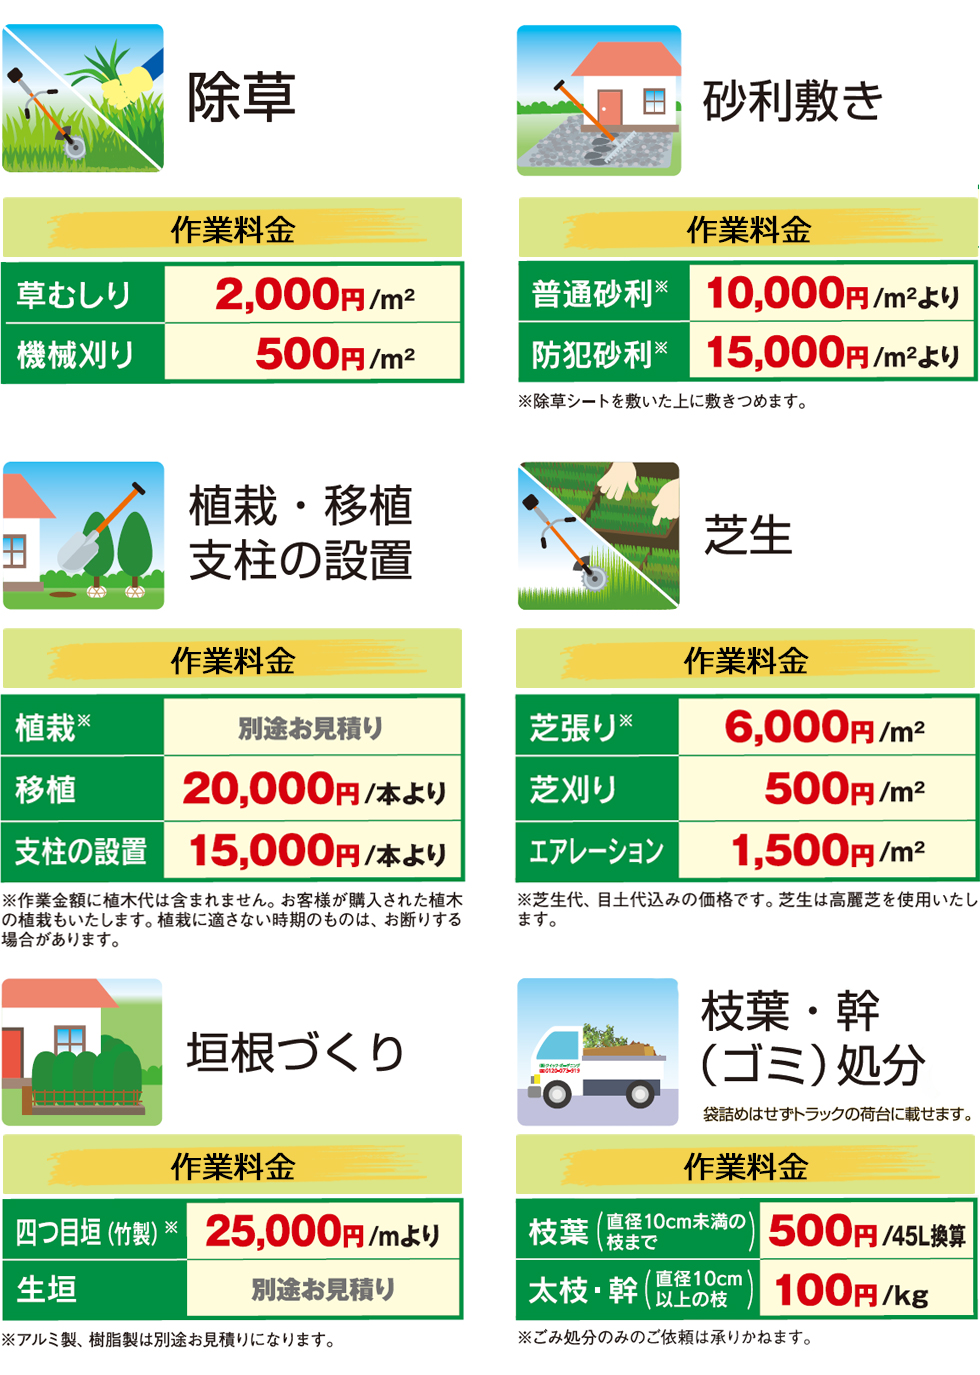 東京都の植木屋,除草,砂利敷き,垣根づくり,庭造り